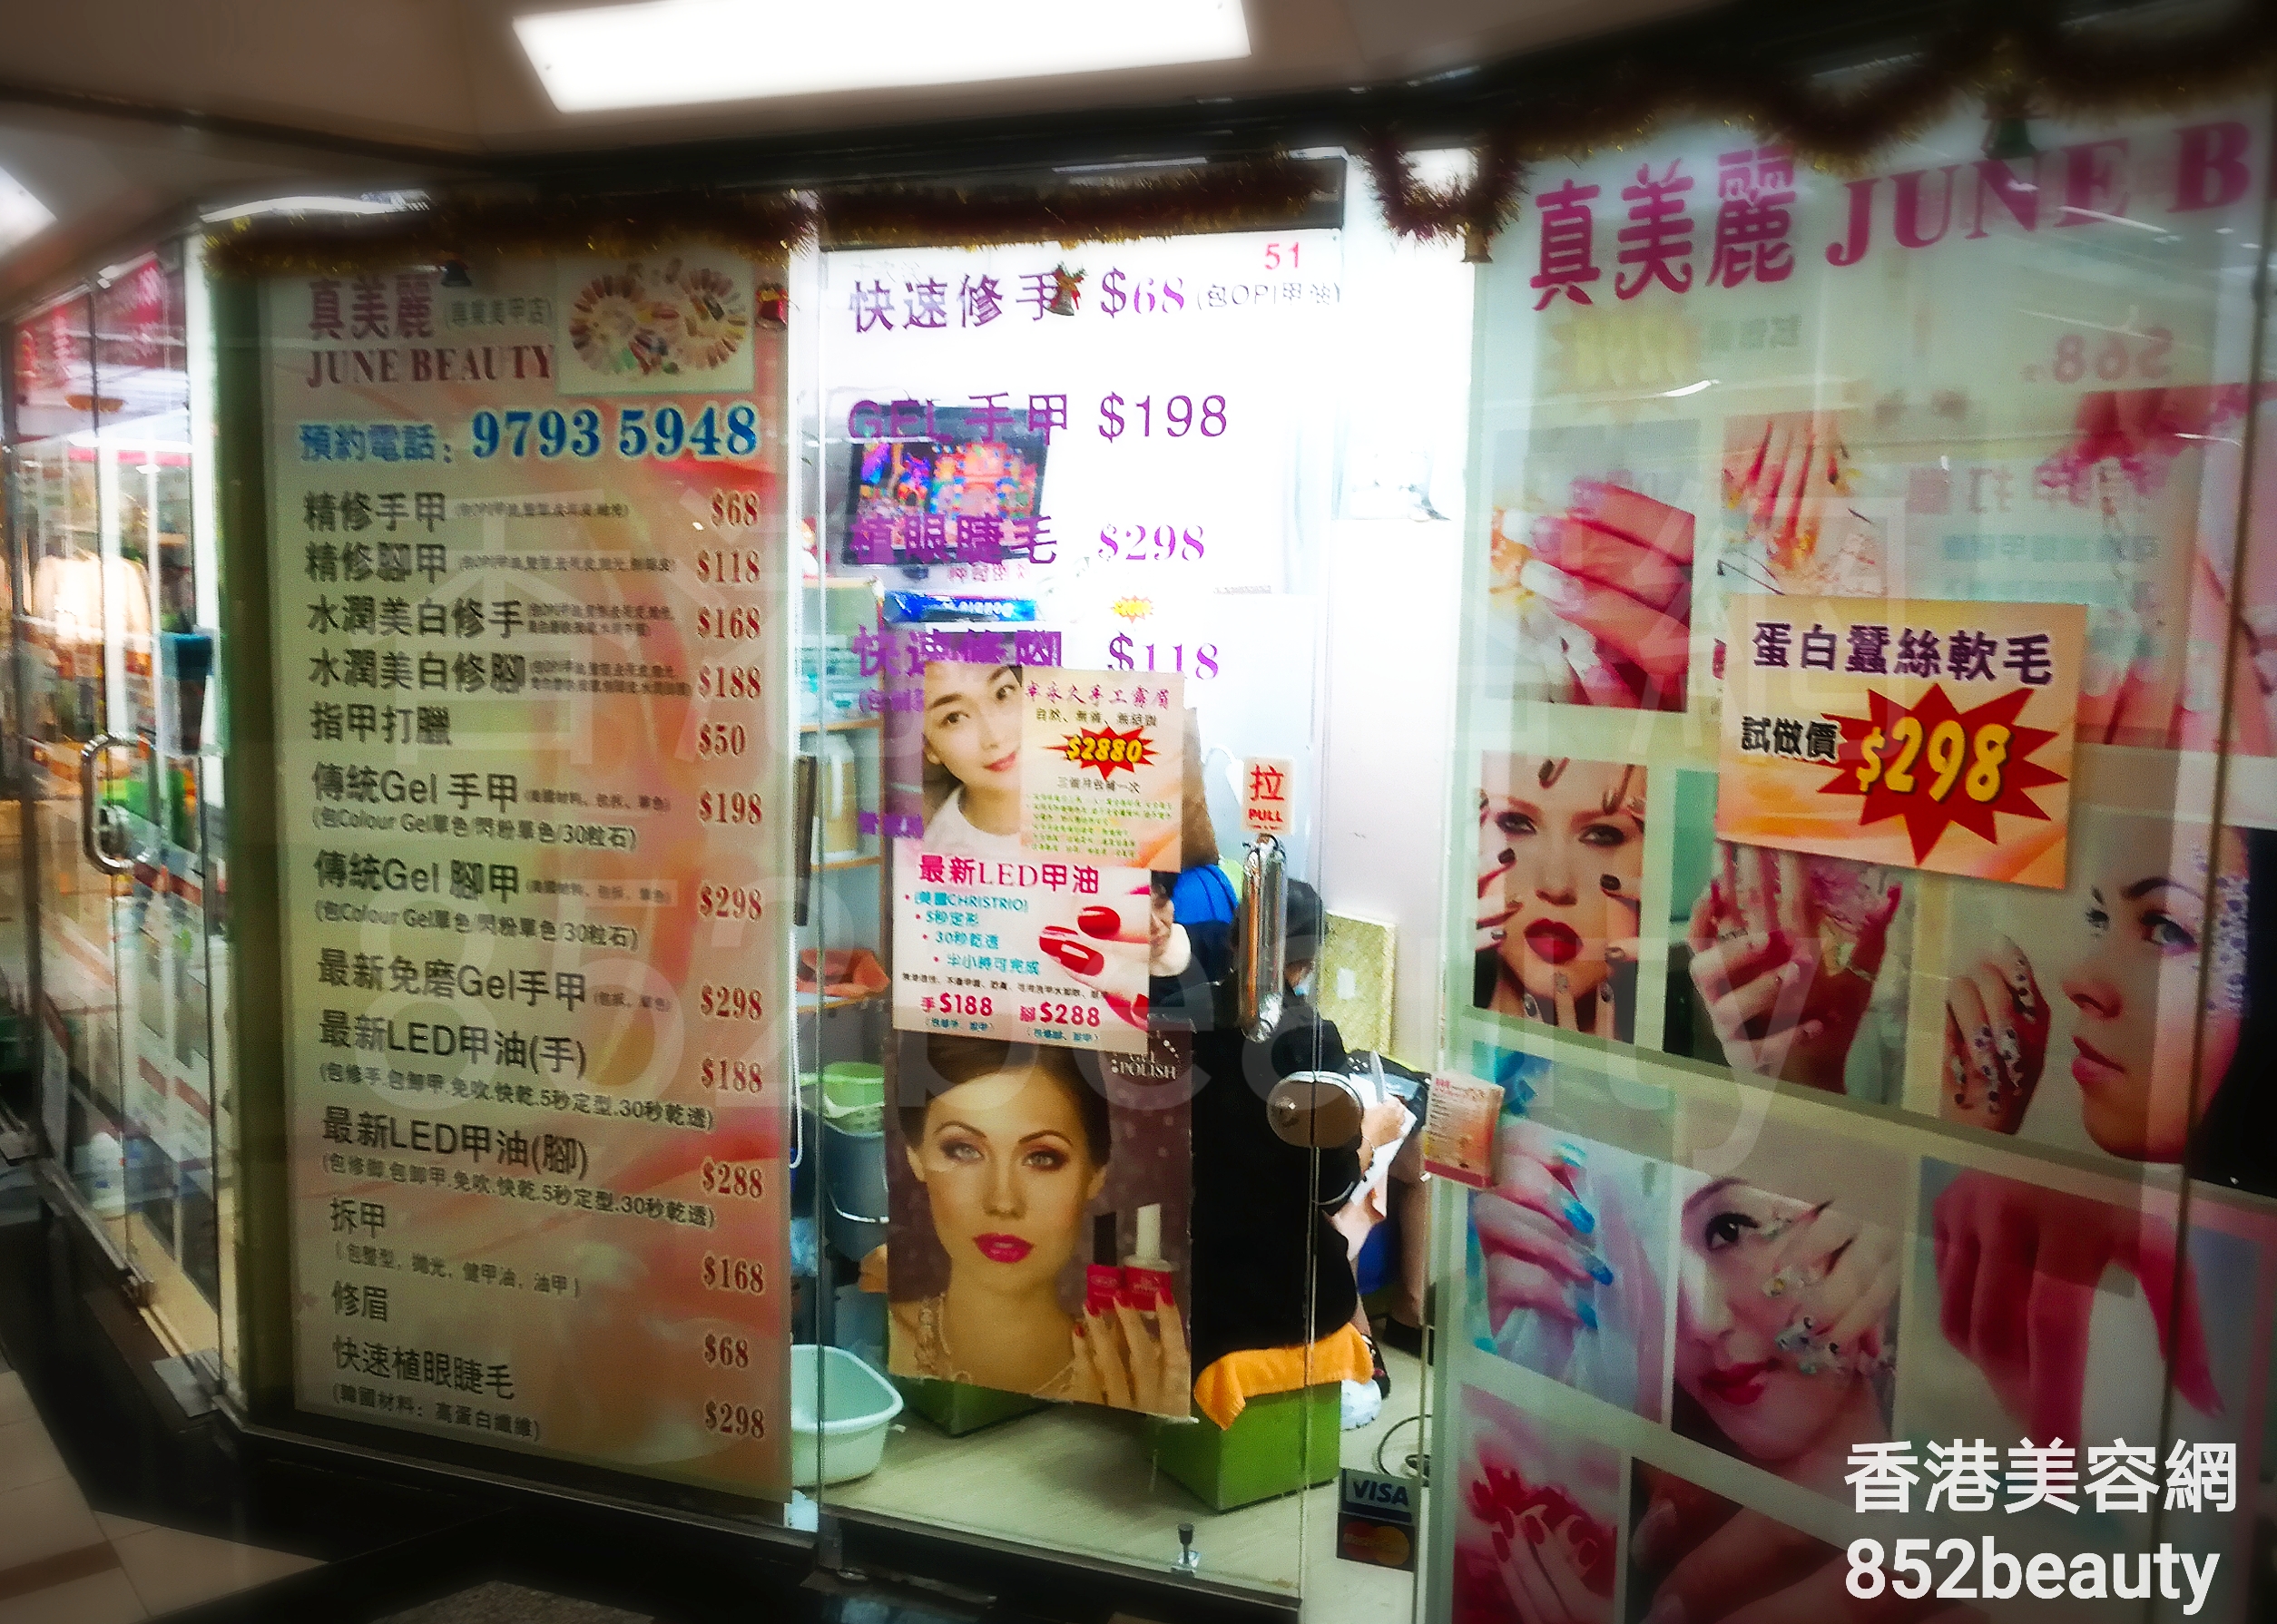 香港美容網 Hong Kong Beauty Salon 美容院 / 美容師: 真美麗 JUNE BEAUTY